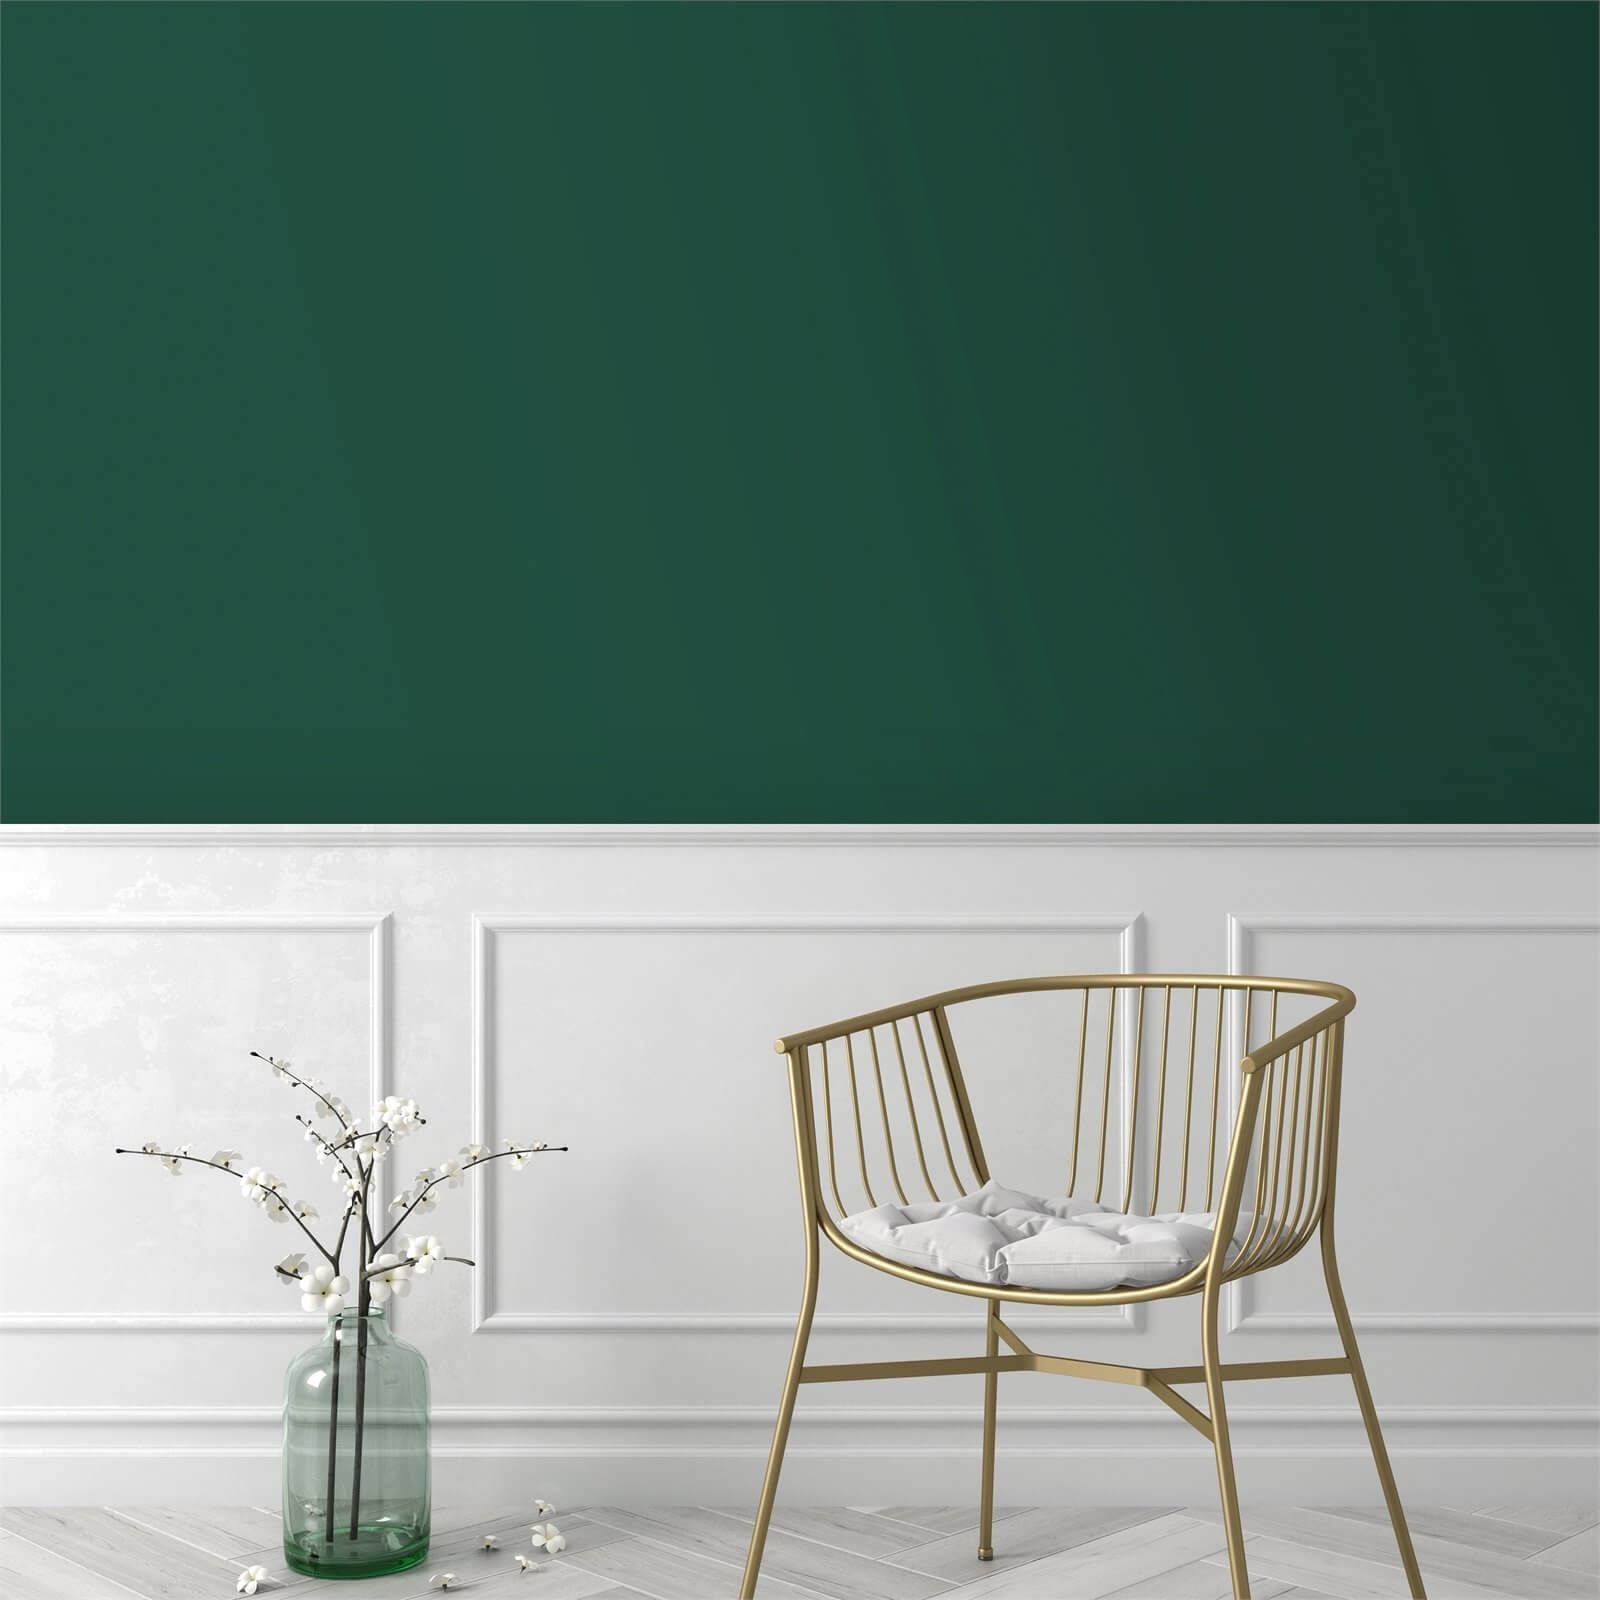 Superfresco Easy Plain Elegant Leaves Dark Green Wallpaper